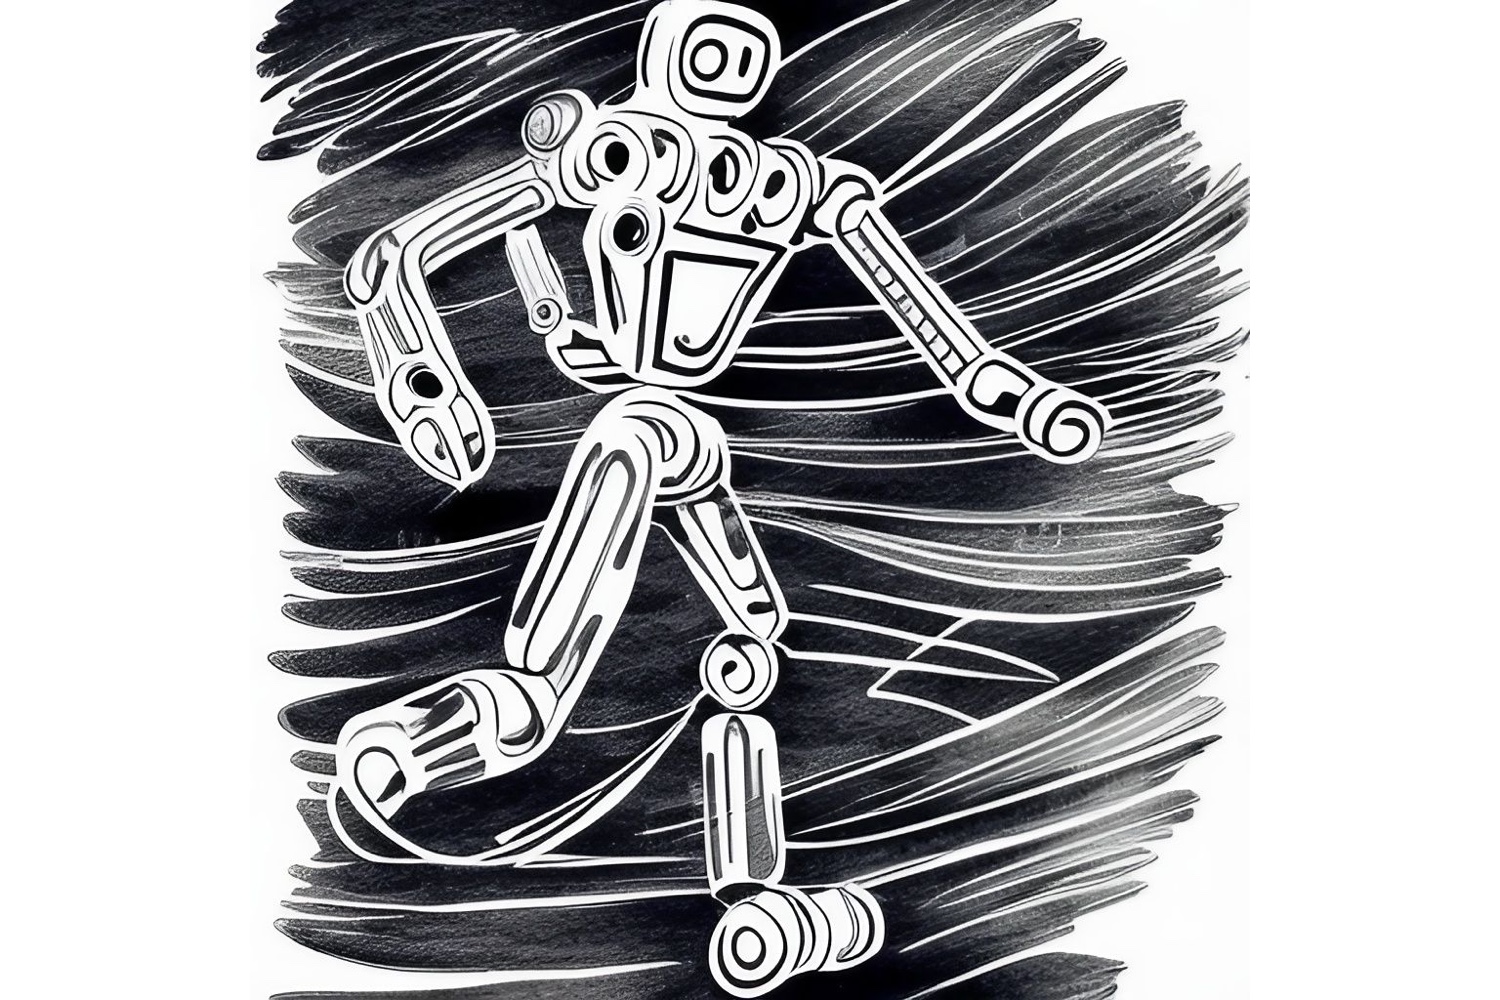 A humanoid robot running a race.